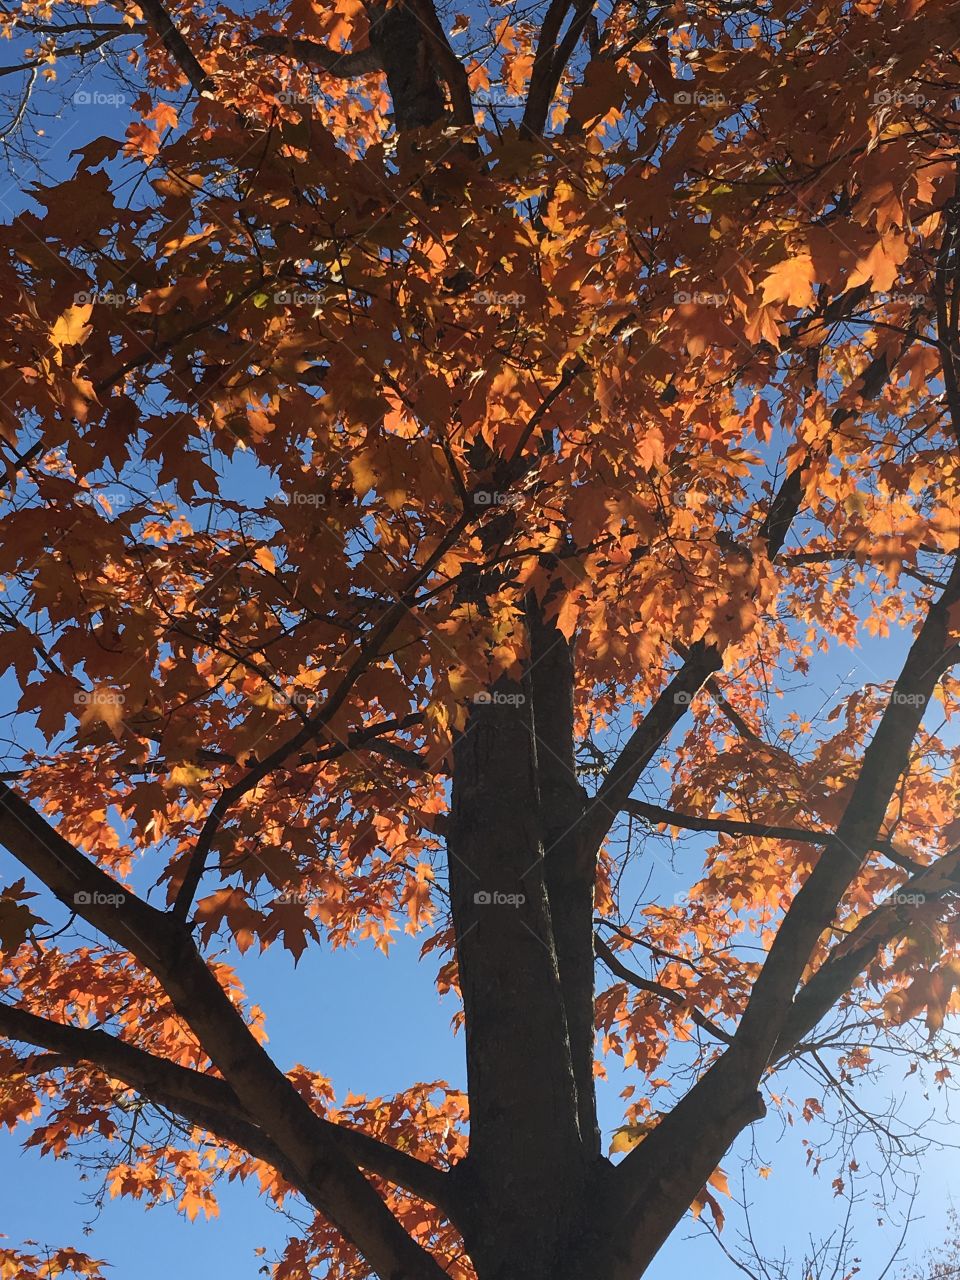 Autumn treetop